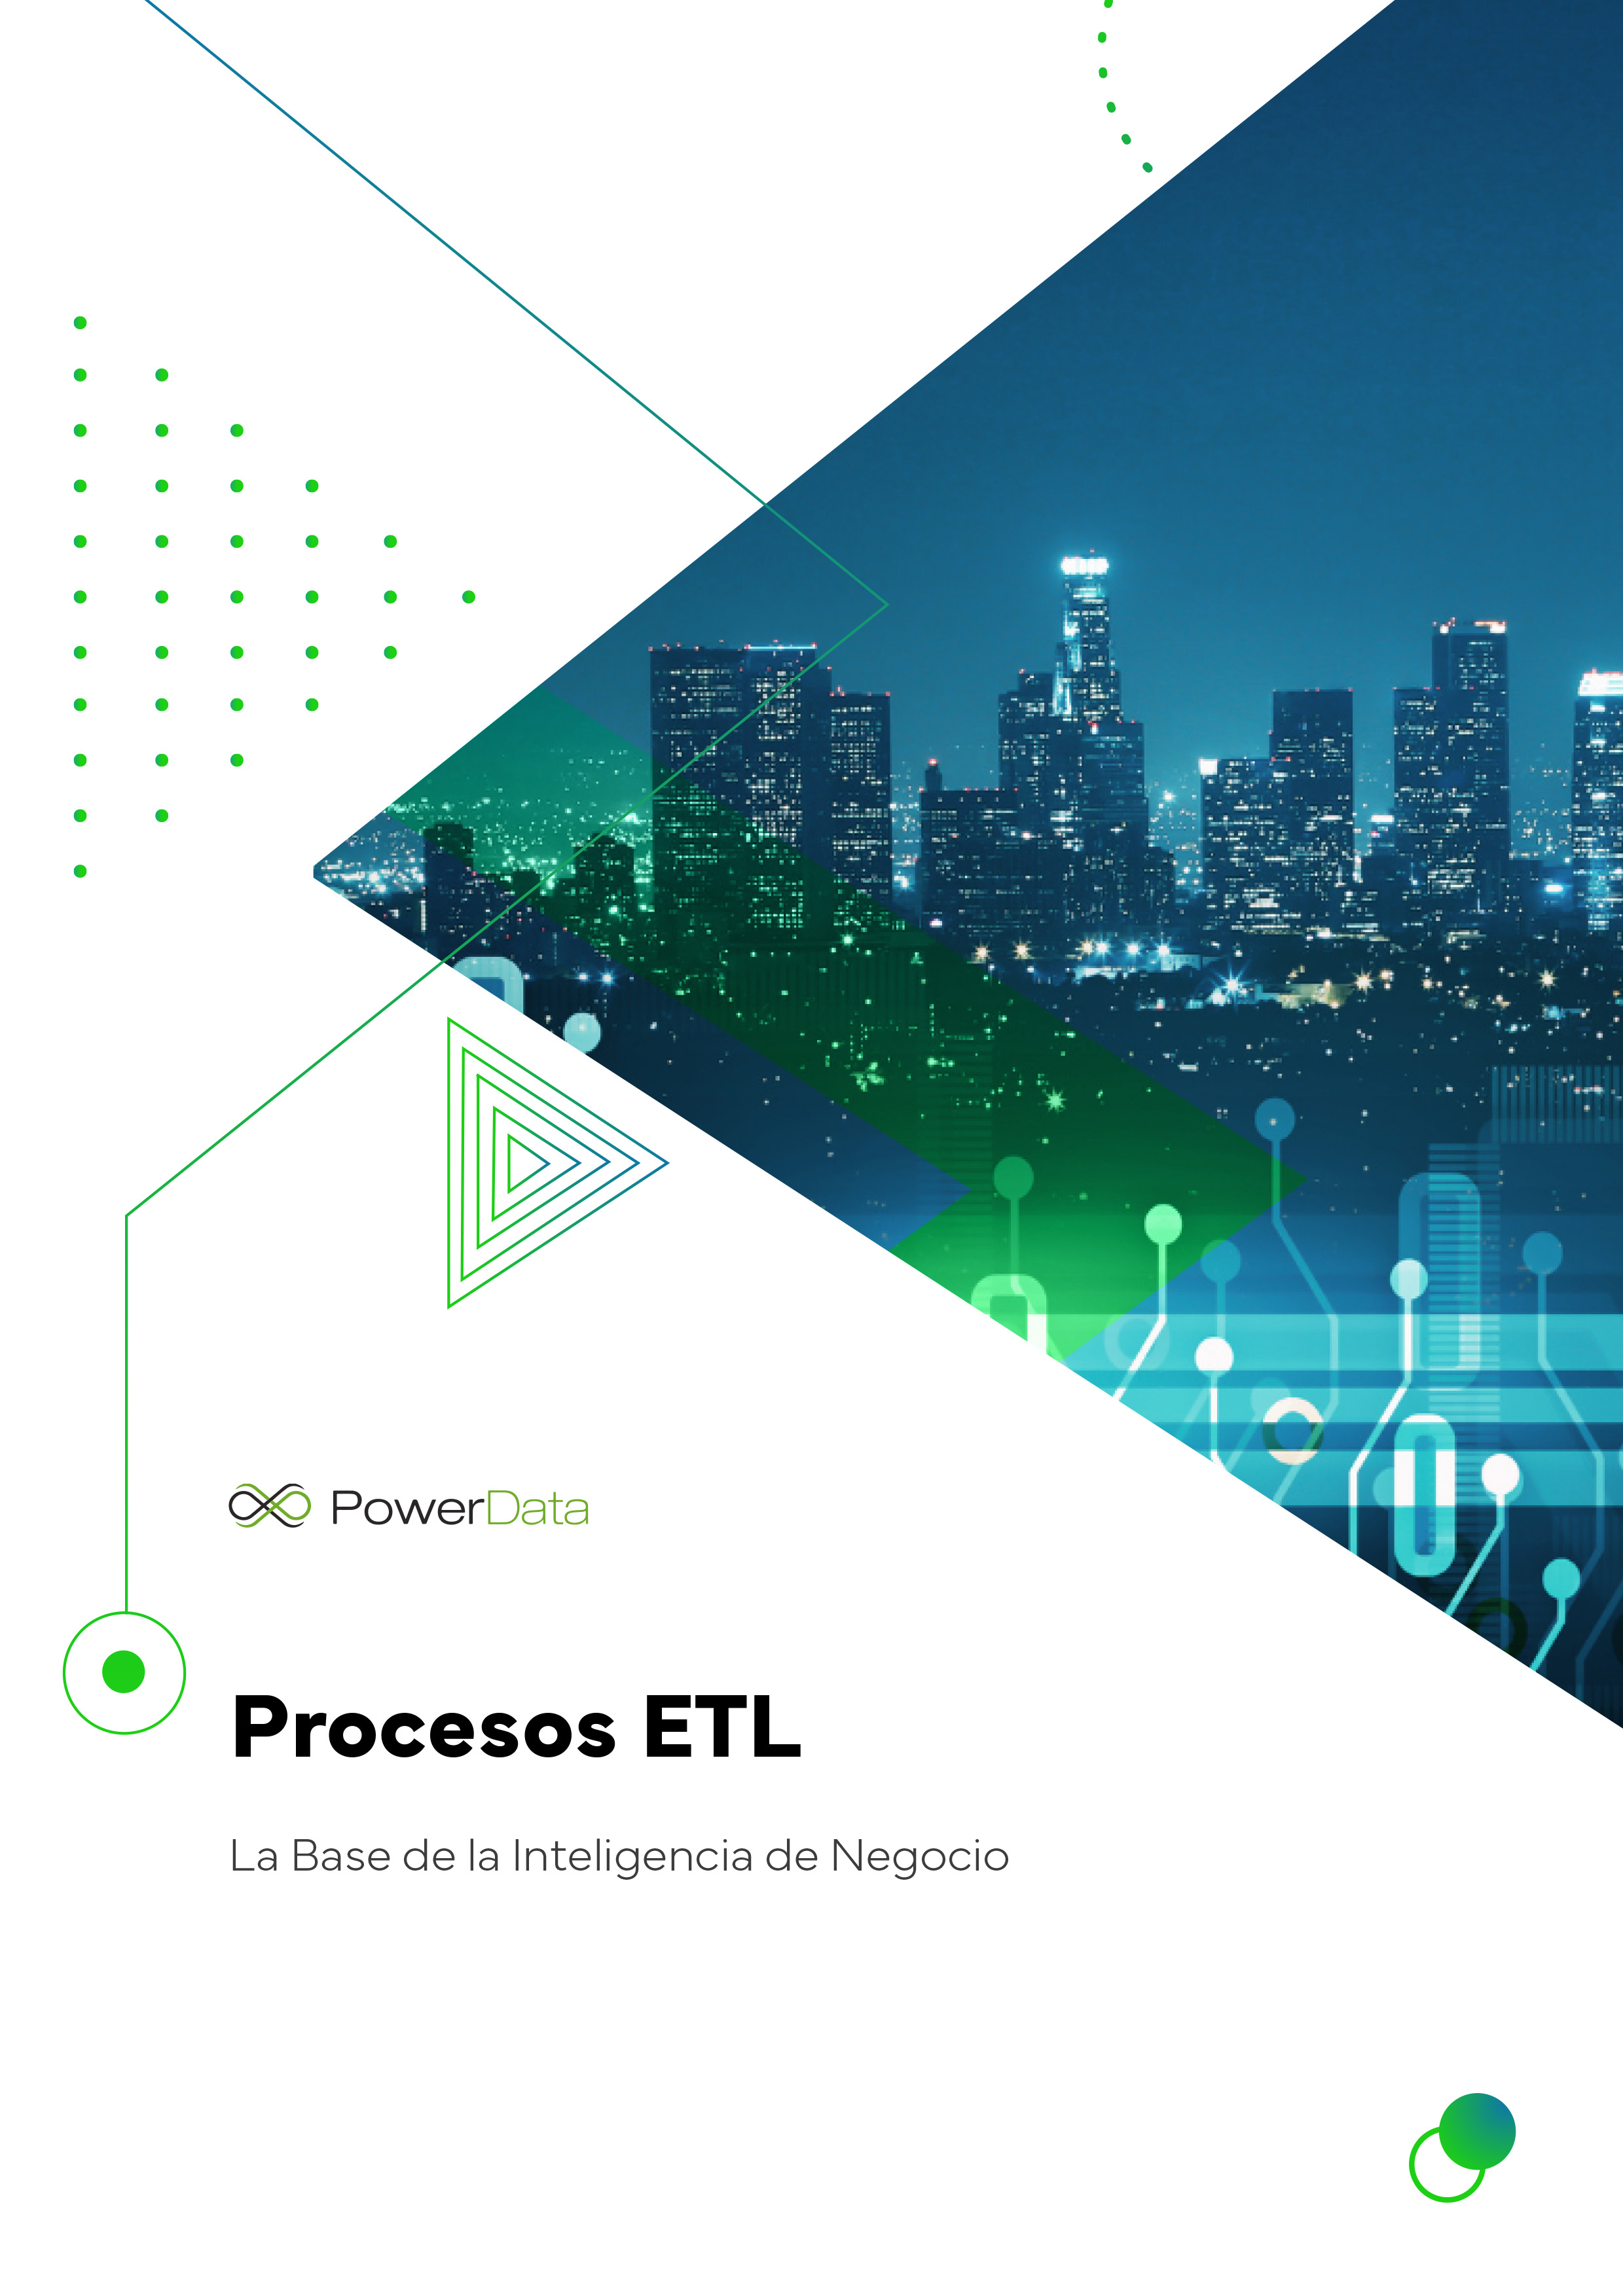 Procesos ETL, la base de la Inteligencia de Negocio